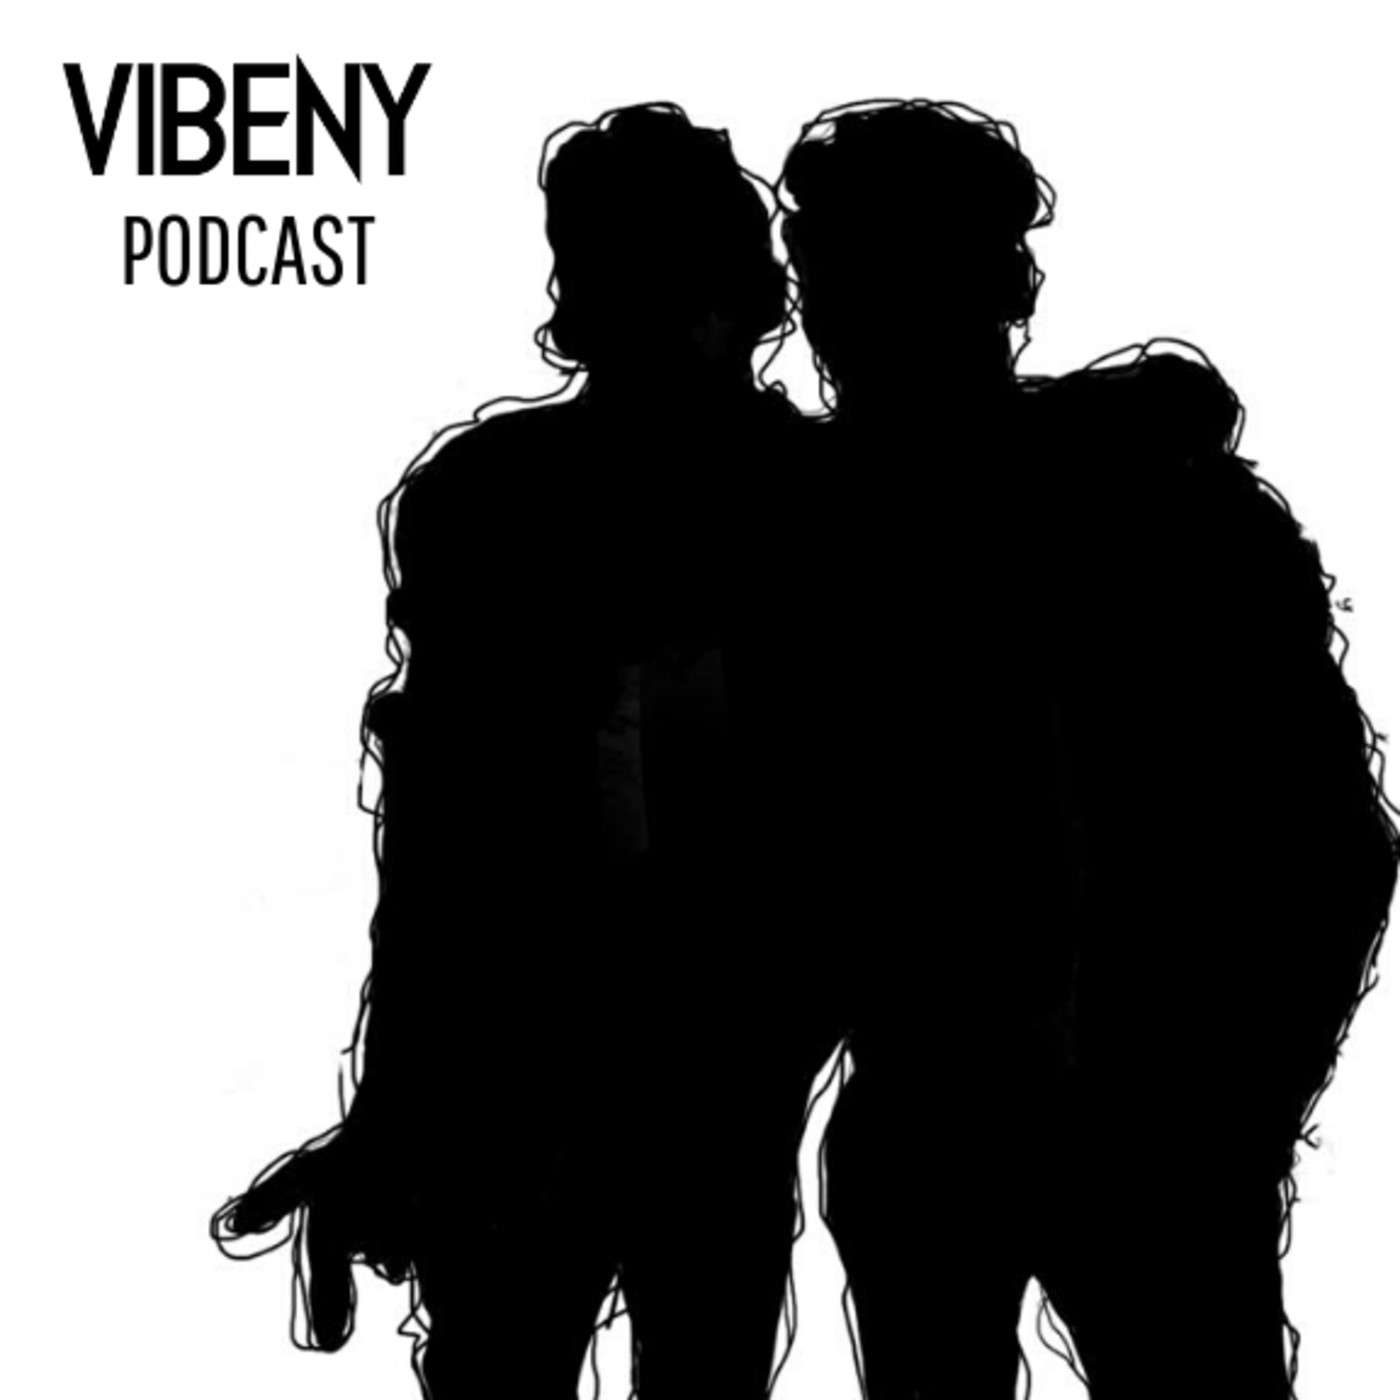 Vibeny Podcast